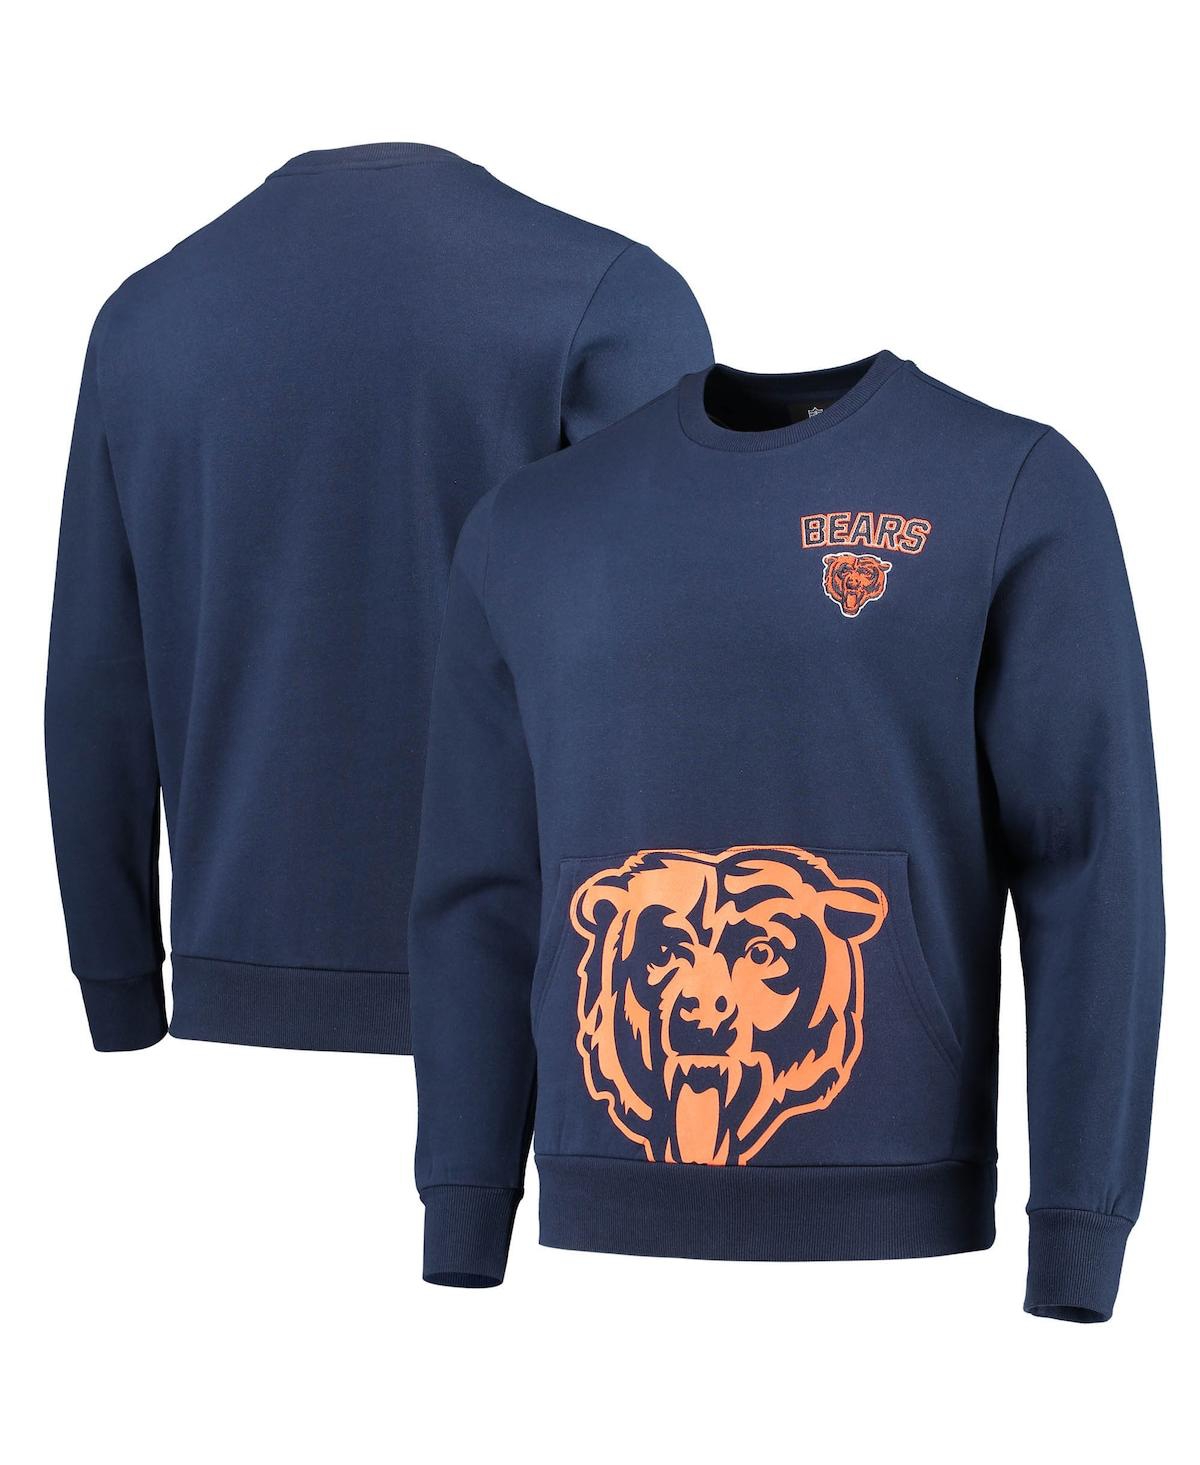 Men's Foco Navy Chicago Bears Pocket Pullover Sweater - Navy